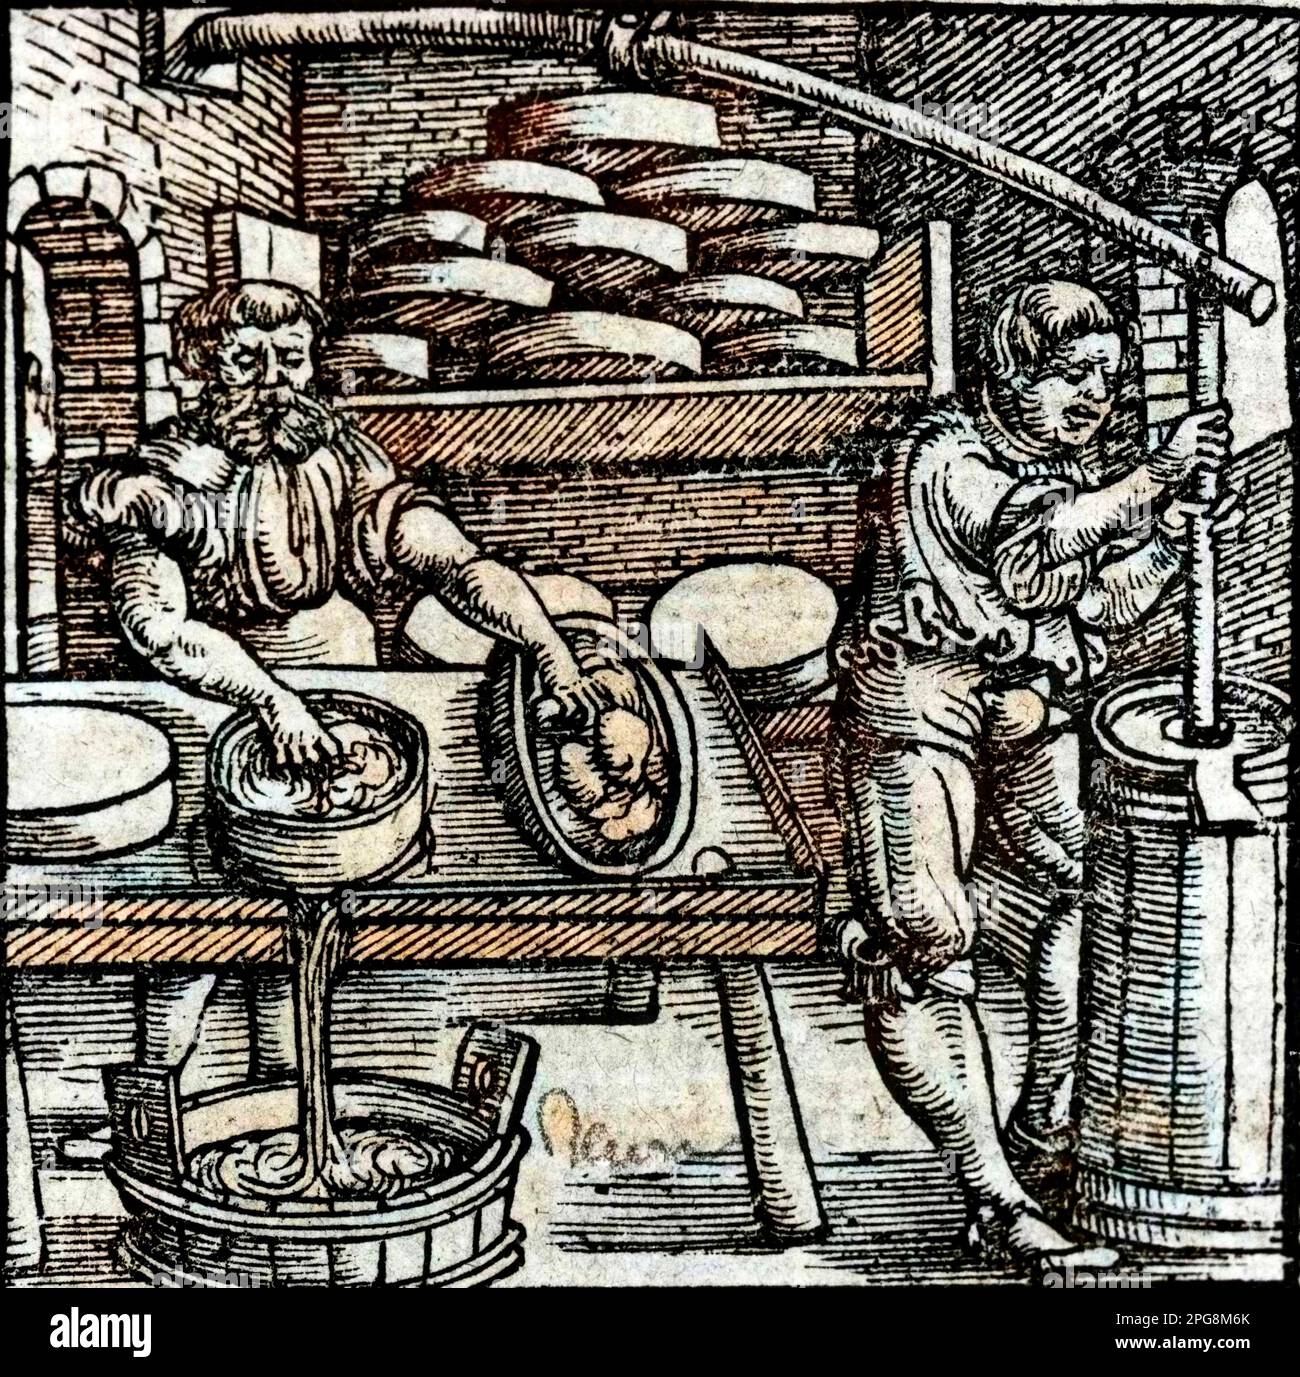 Fabricant de beurre et de fromage - gravure du 17eme siecle Banque D'Images